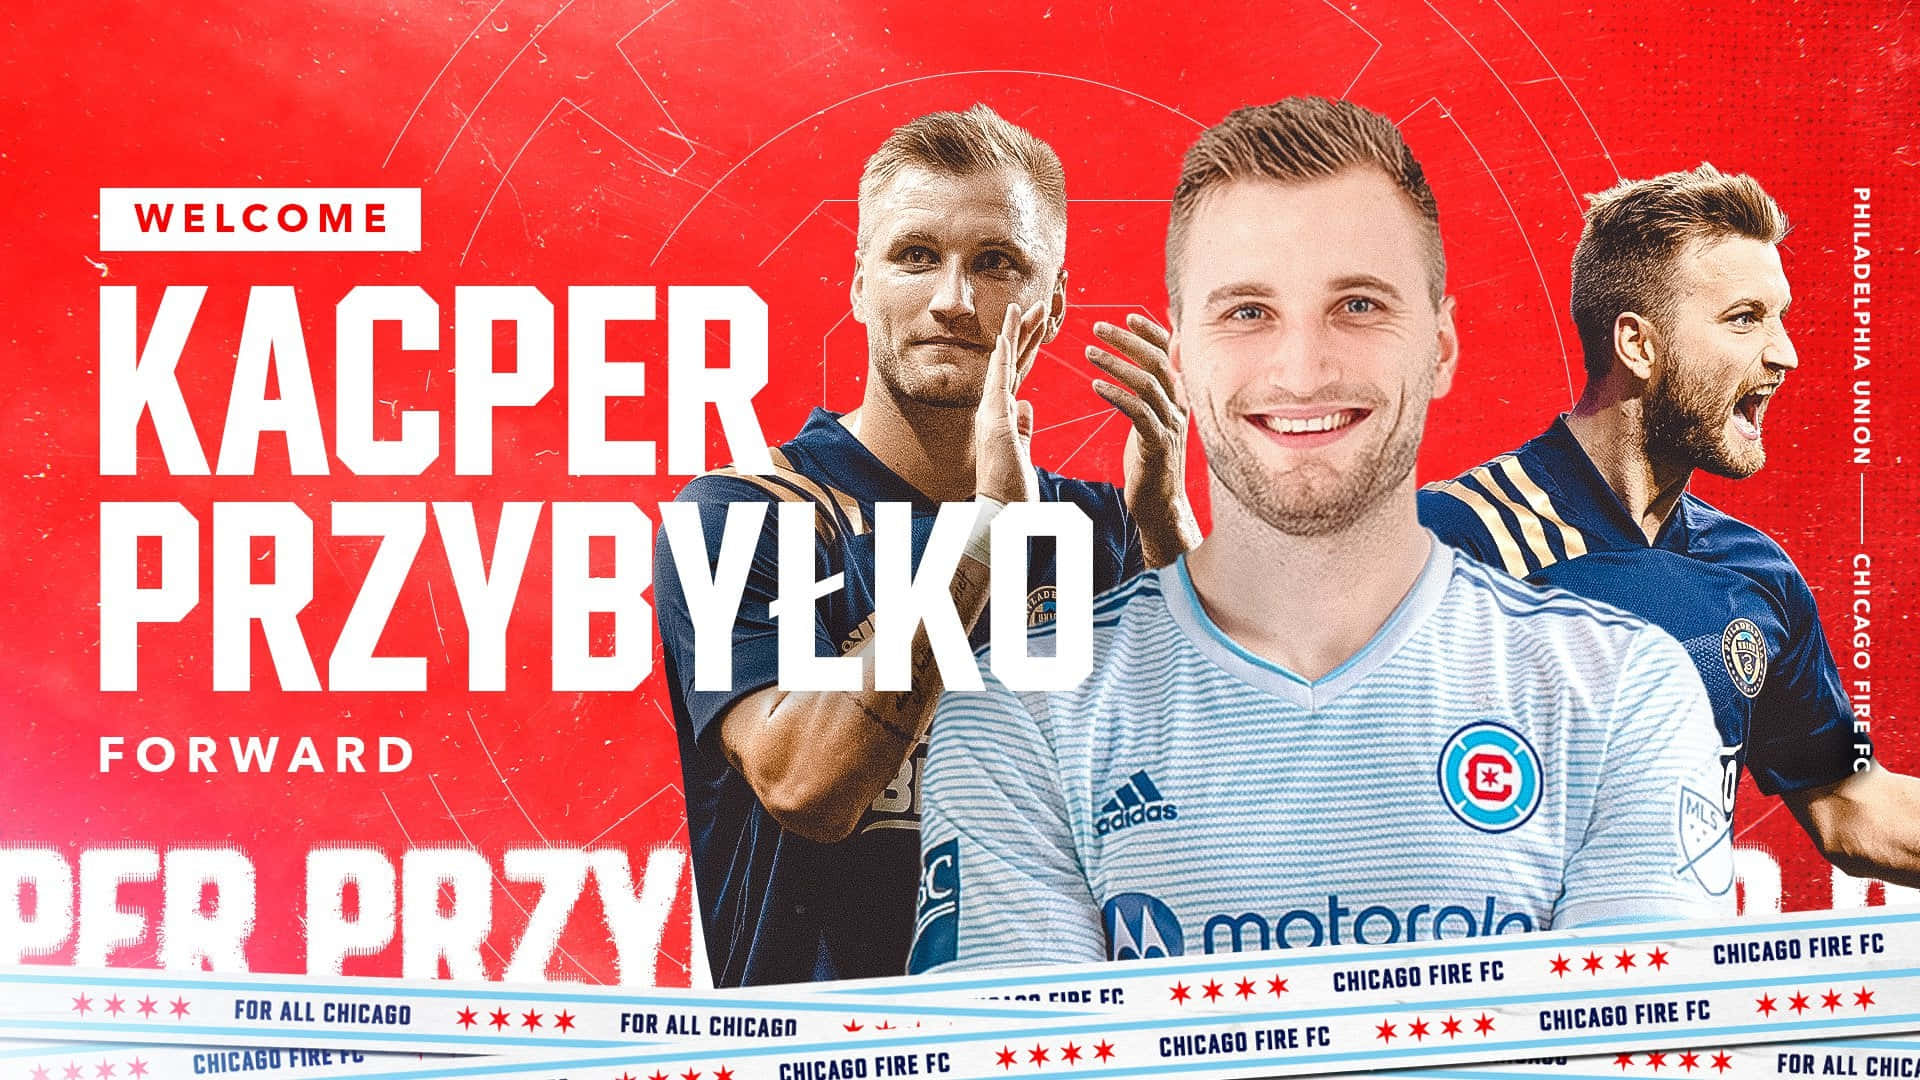 Polskprofessionell Fotbollsspelare Kacper Przybylko Välkomnas Av Chicago Fire På Affischen. Wallpaper